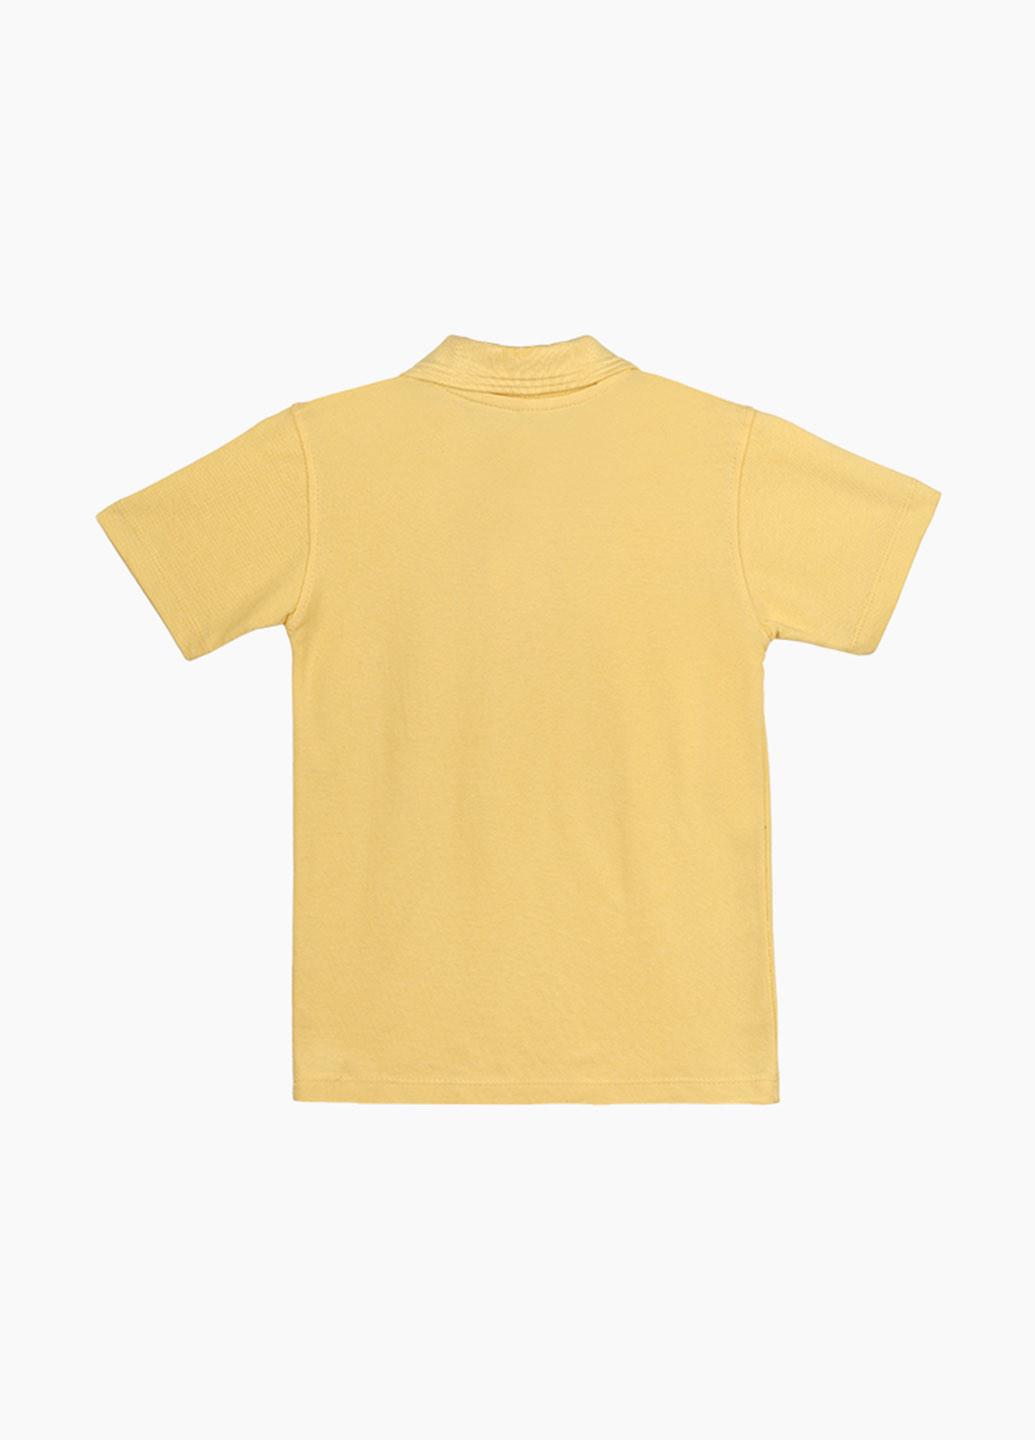 Желтая детская футболка-поло для мальчика Pitiki kids однотонная